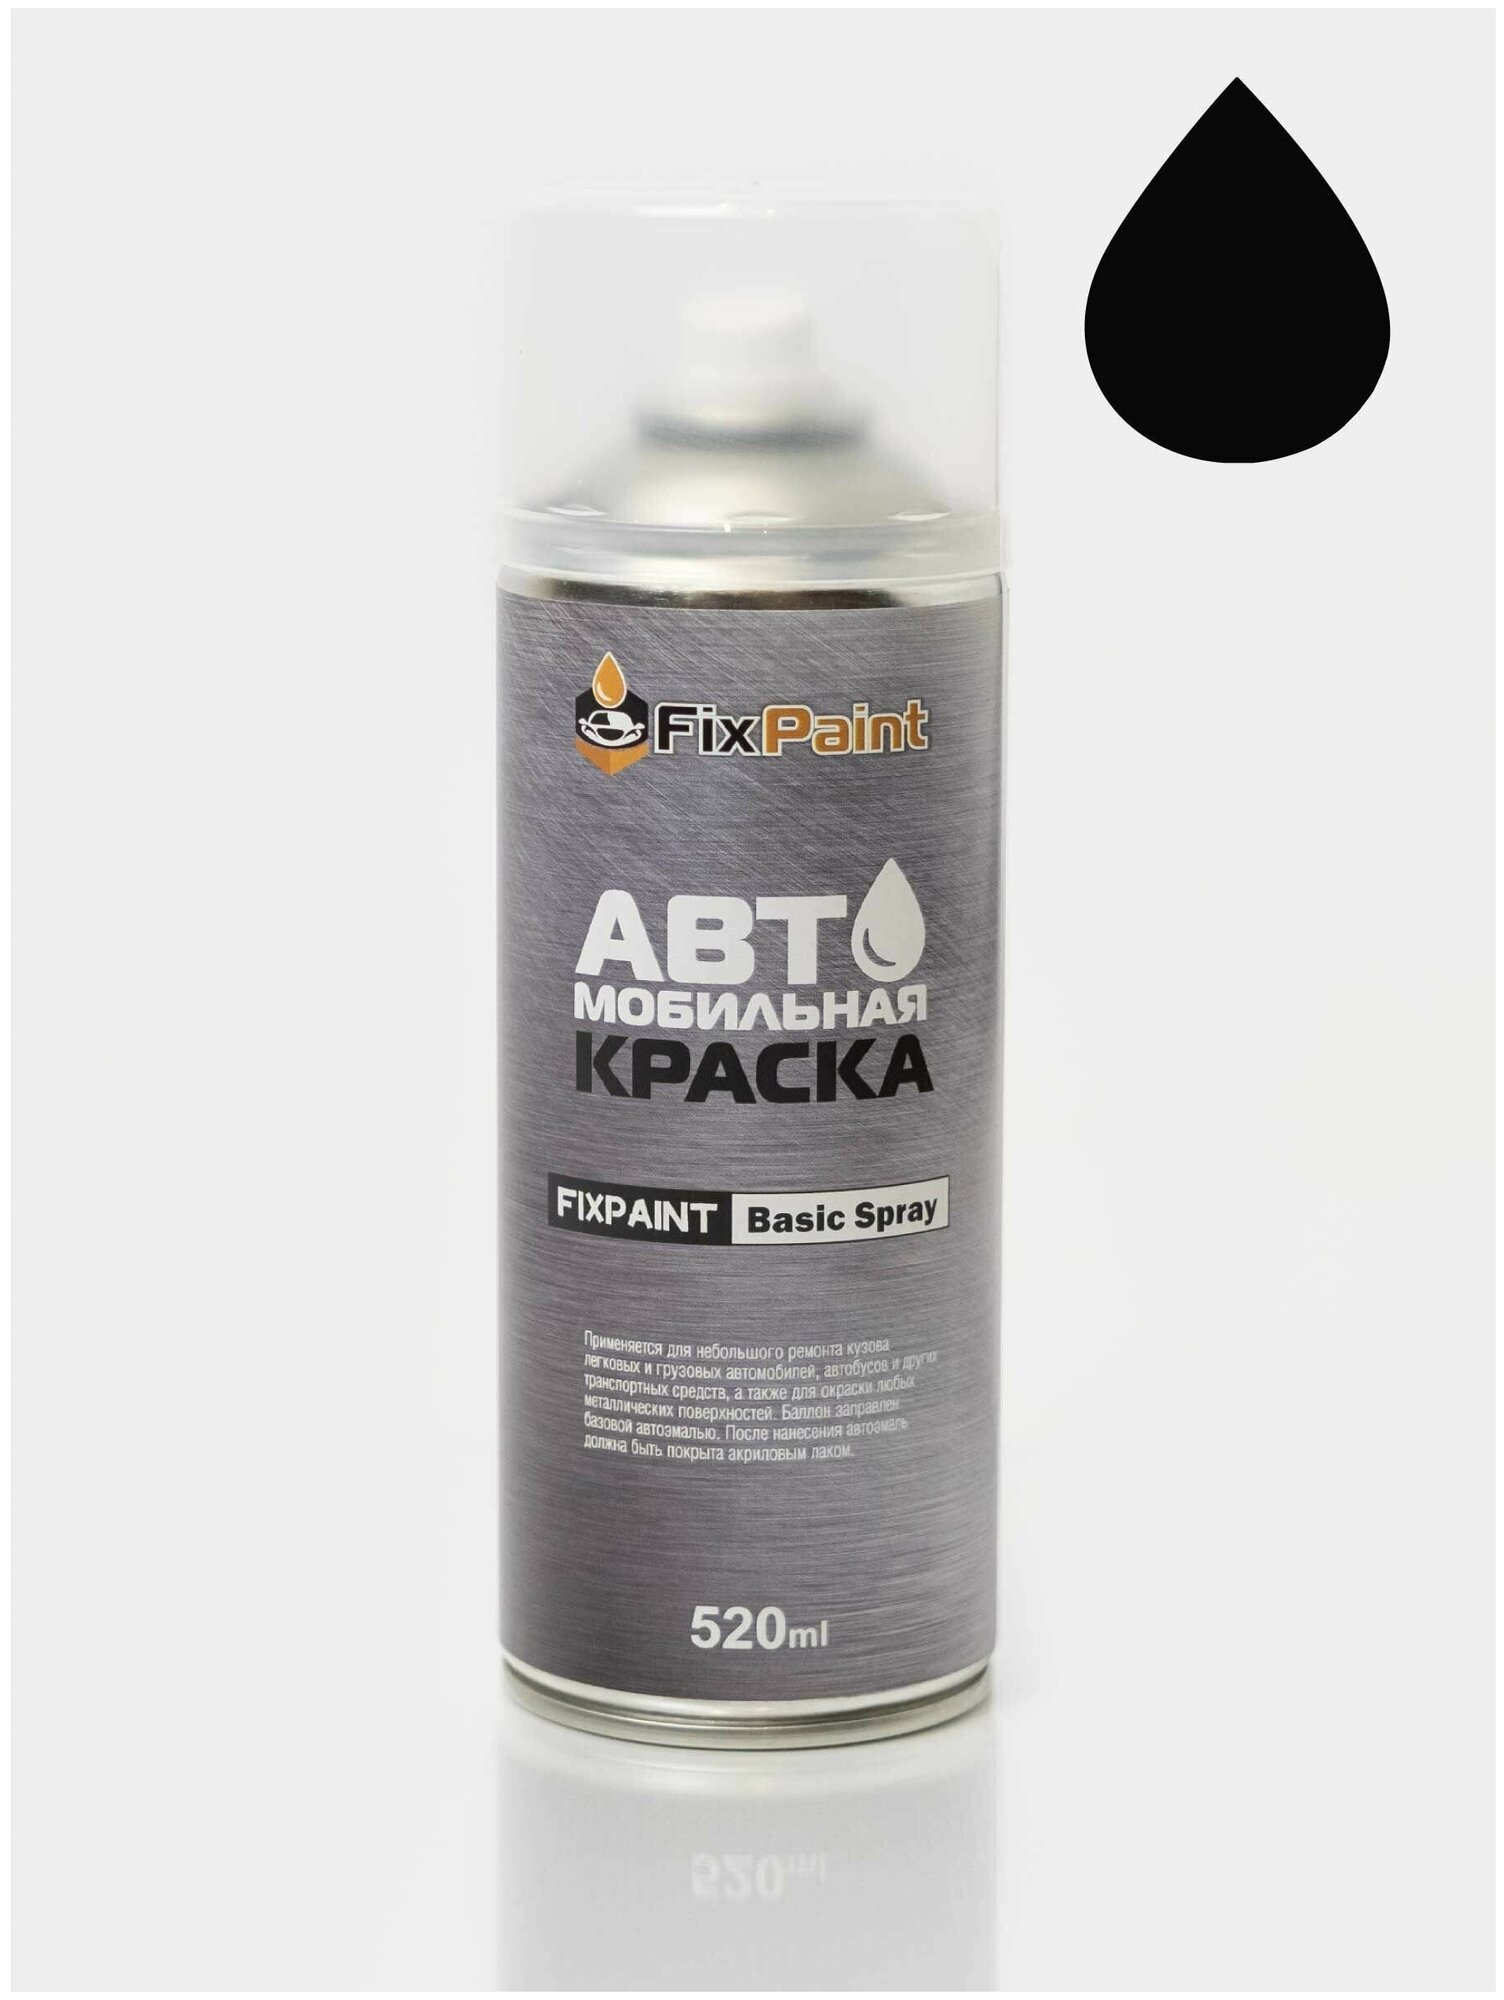 Автомобильная краска FixPaint Spray KIA код цвета EB название EBONY BLACK солид в аэрозольном баллончике 520 мл